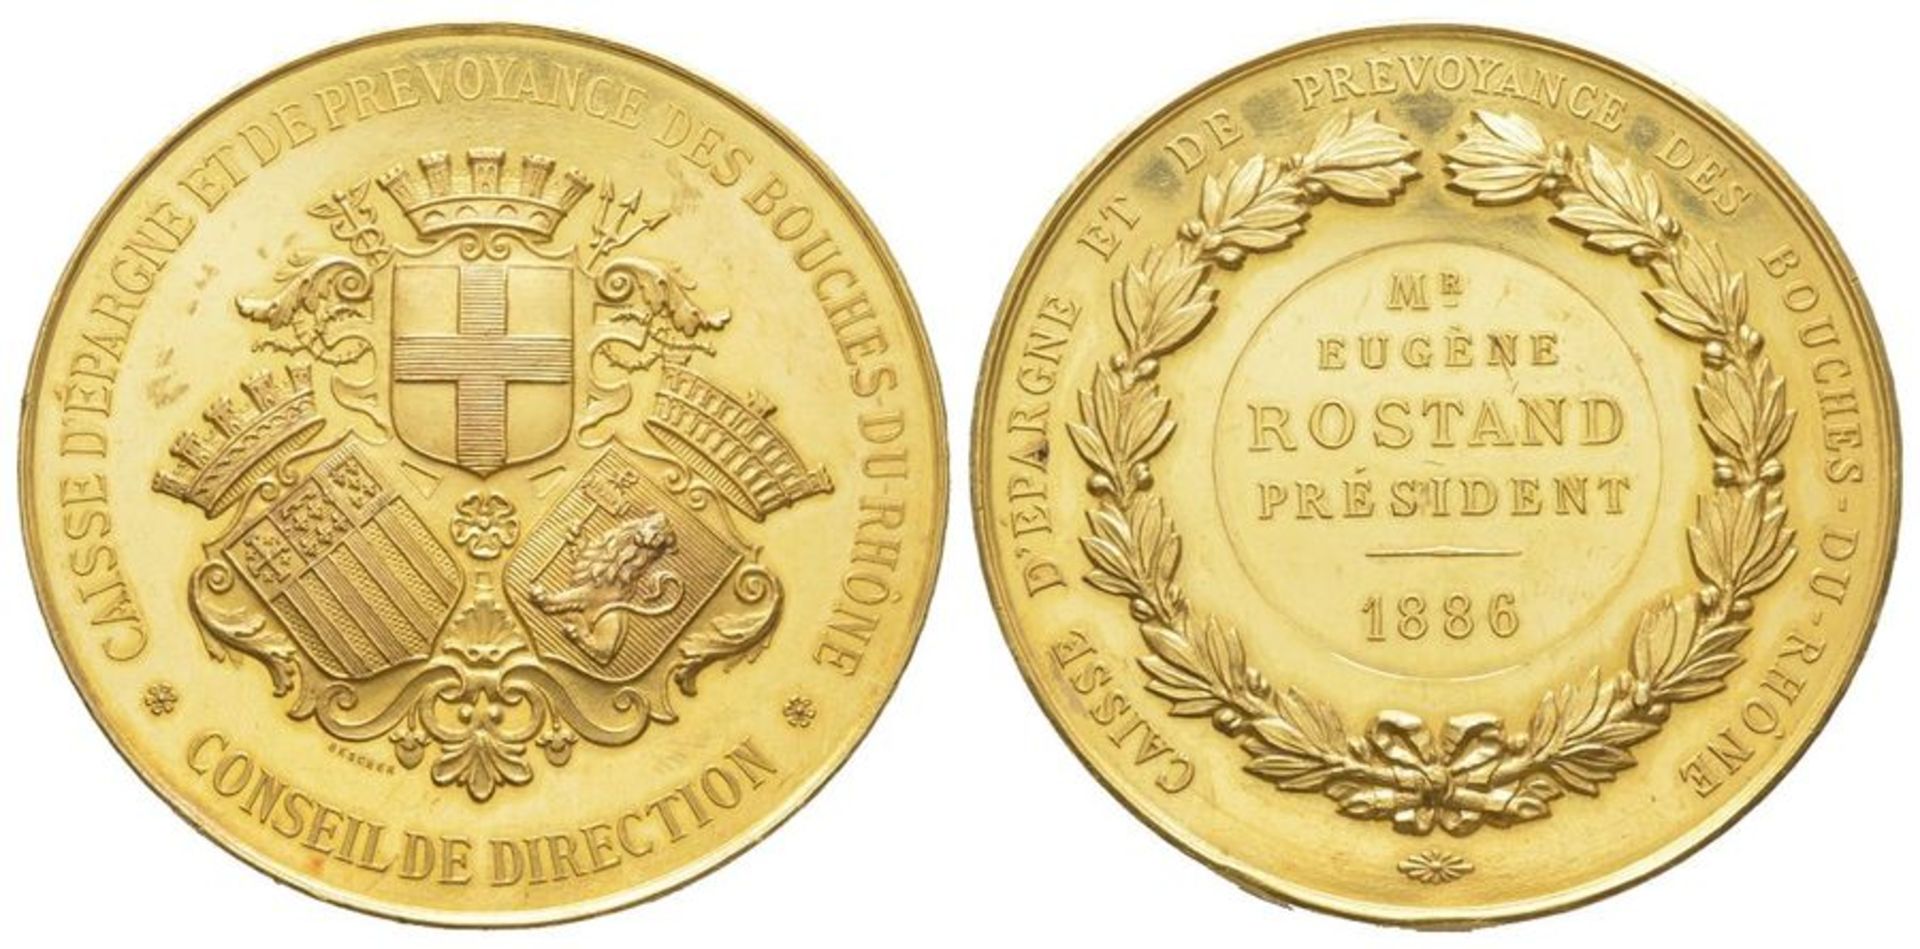 France, Third Republic 1870-1940. Gold medal, 1886, « Caisse d’Épargne et de [...]